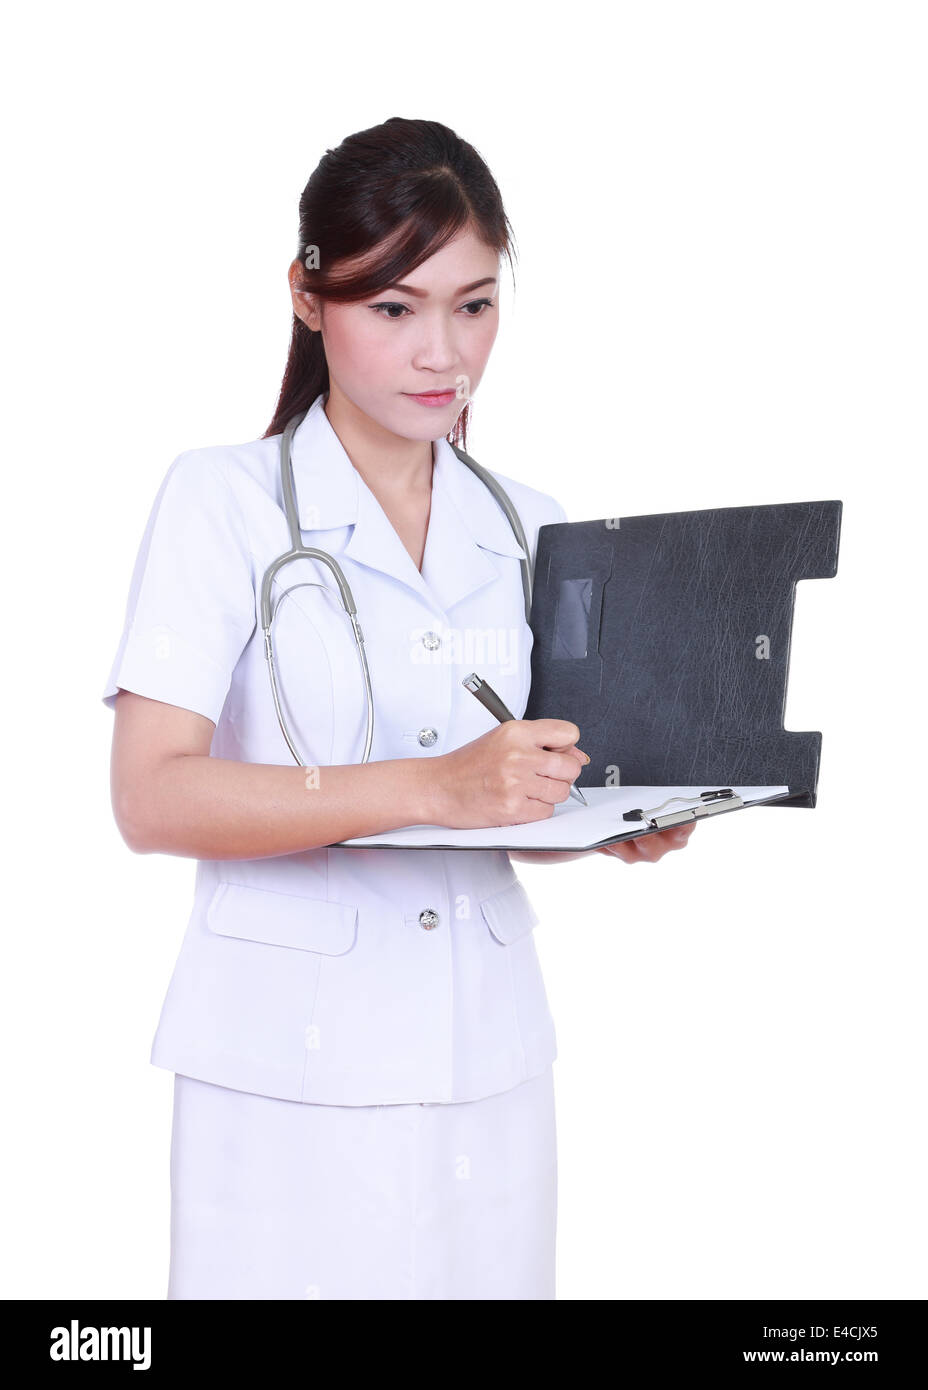 female nurse writing medical report isolated on white background Stock Photo